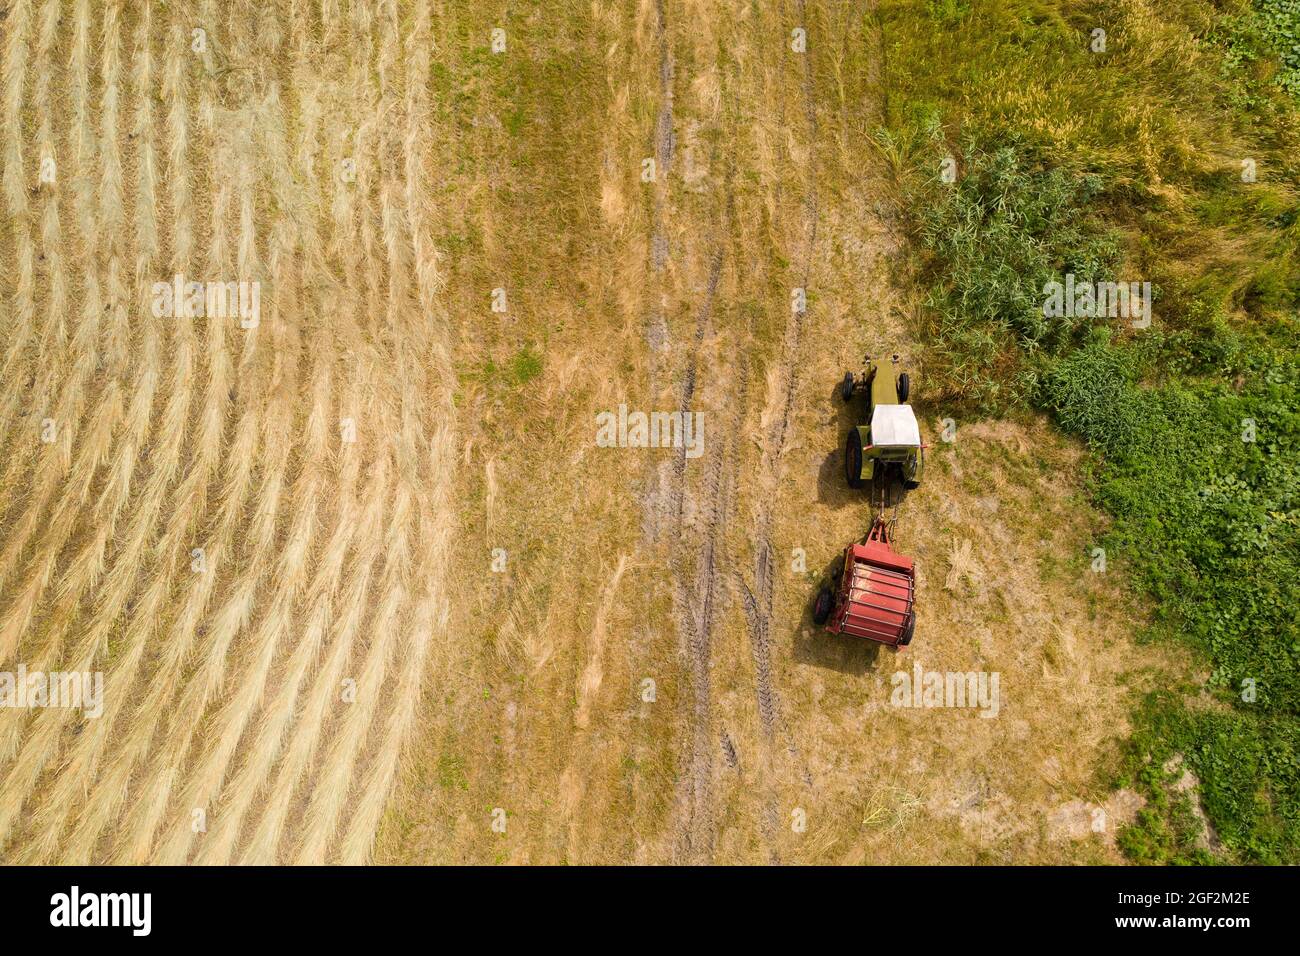 Tracteur pour la fabrication de balles de paille sur le champ de blé récolté. Vue aérienne Banque D'Images